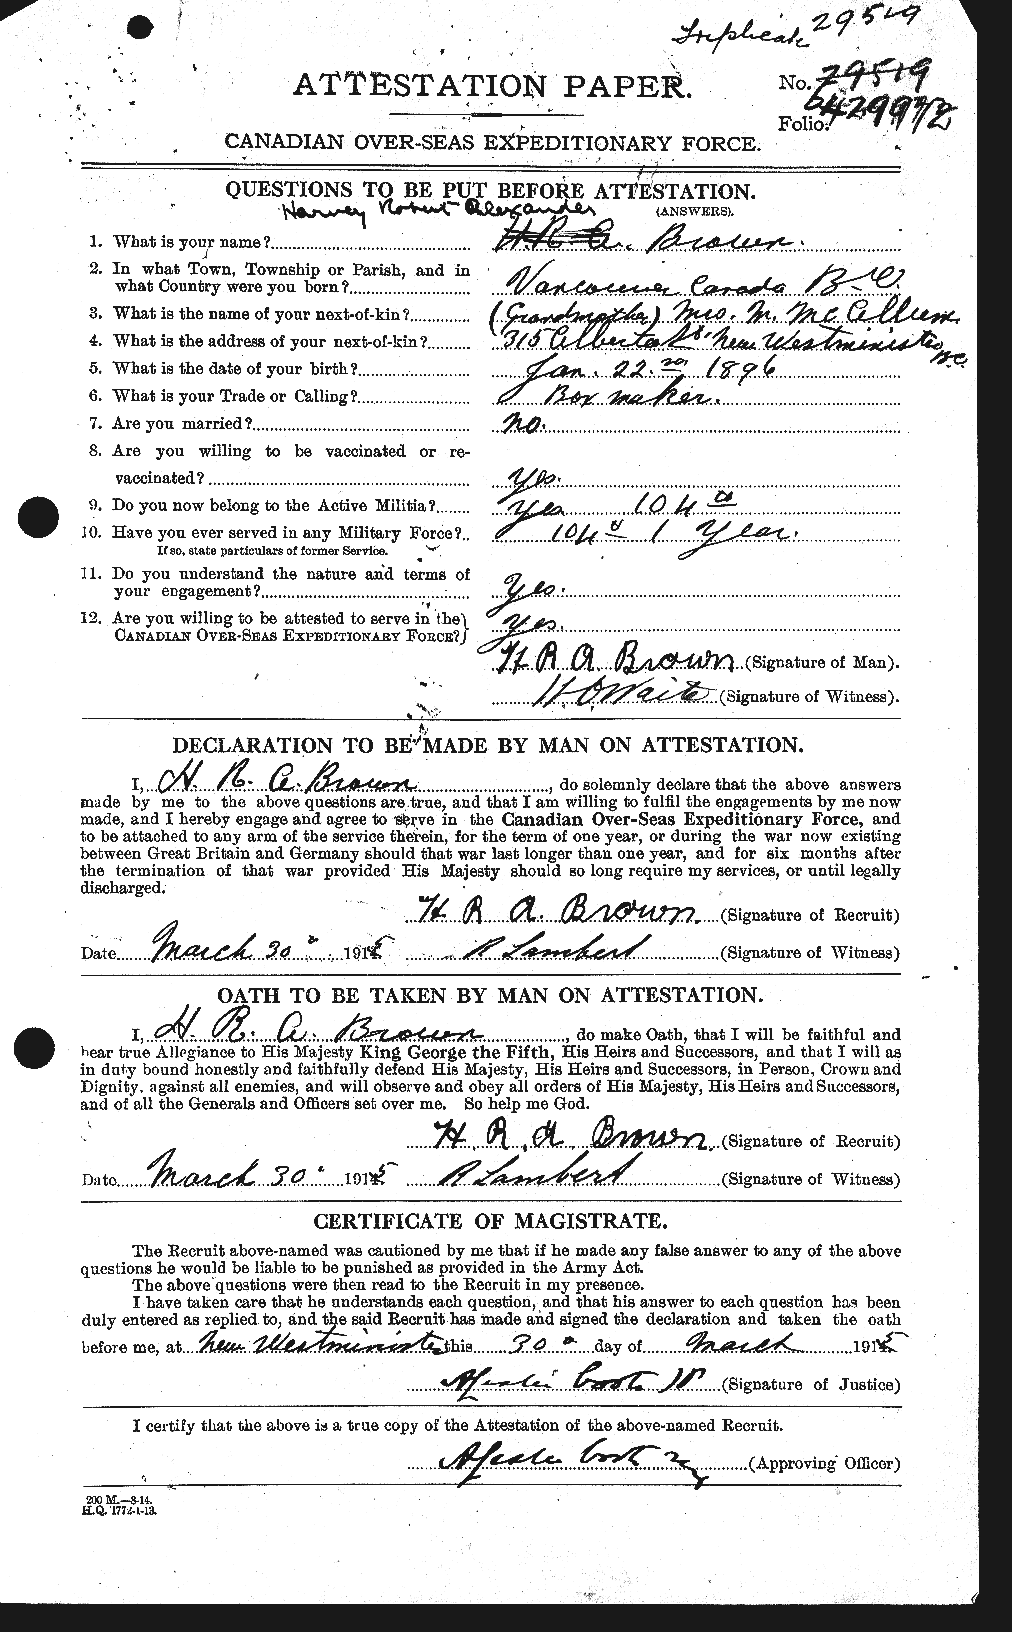 Dossiers du Personnel de la Première Guerre mondiale - CEC 265491a